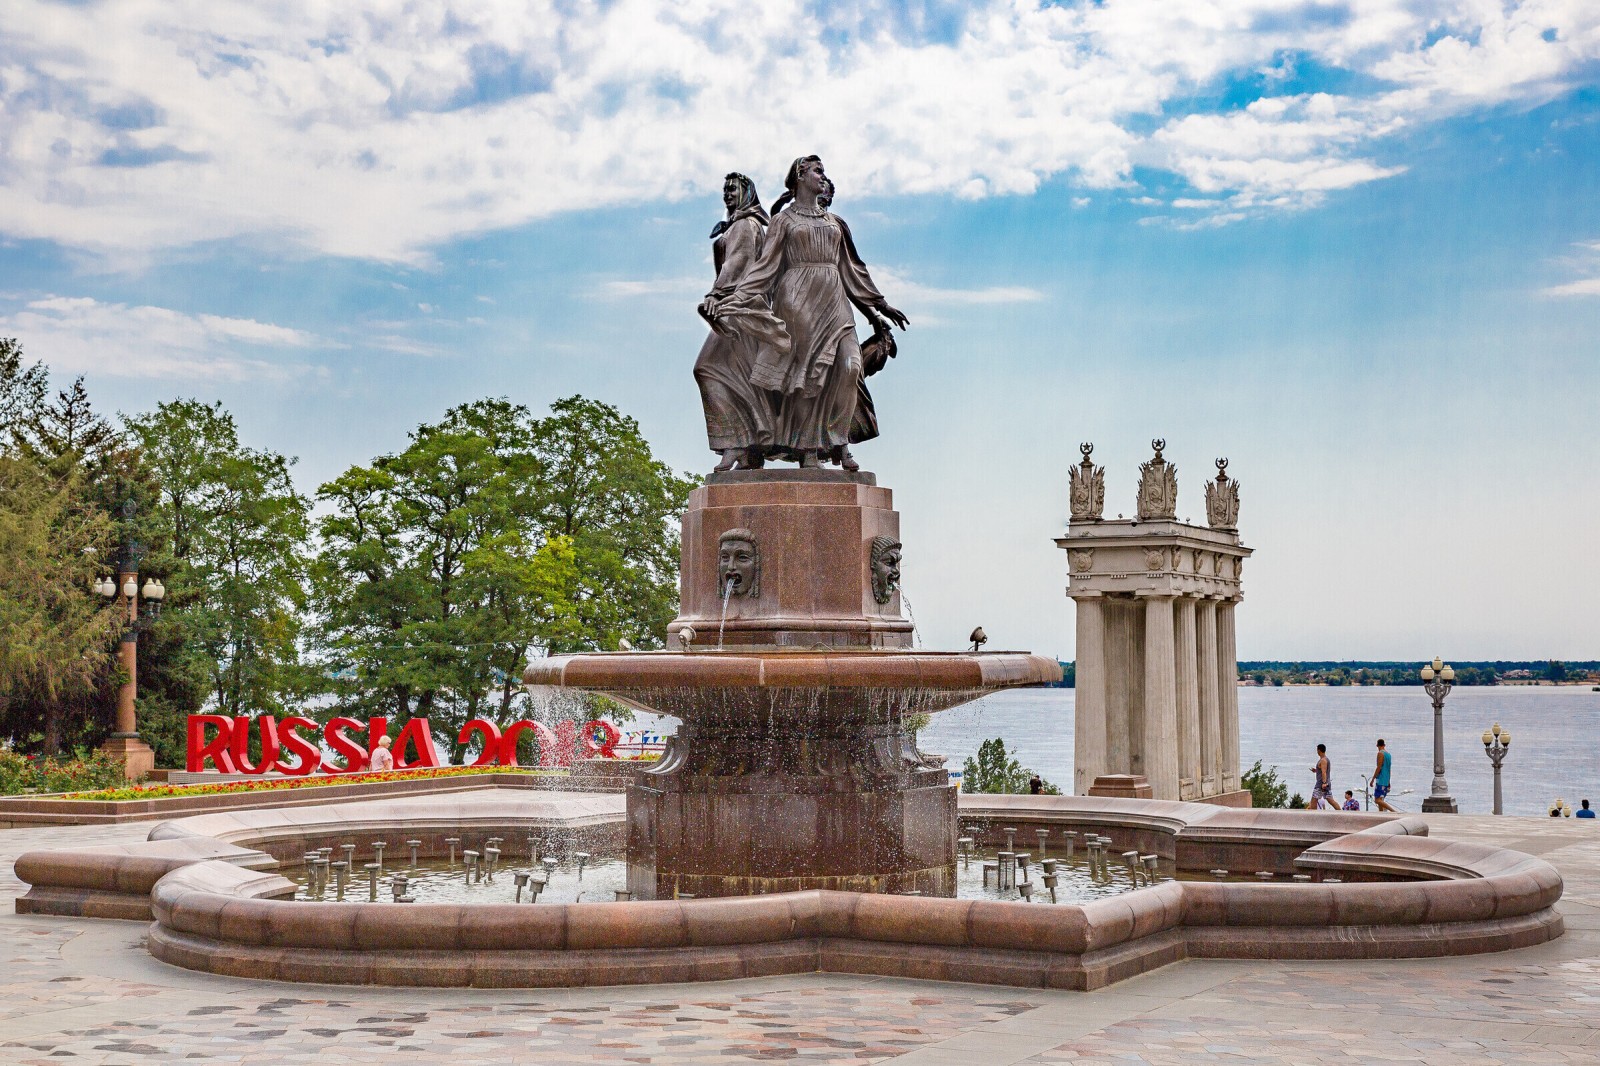 Excursion program "Hero City Volgograd"